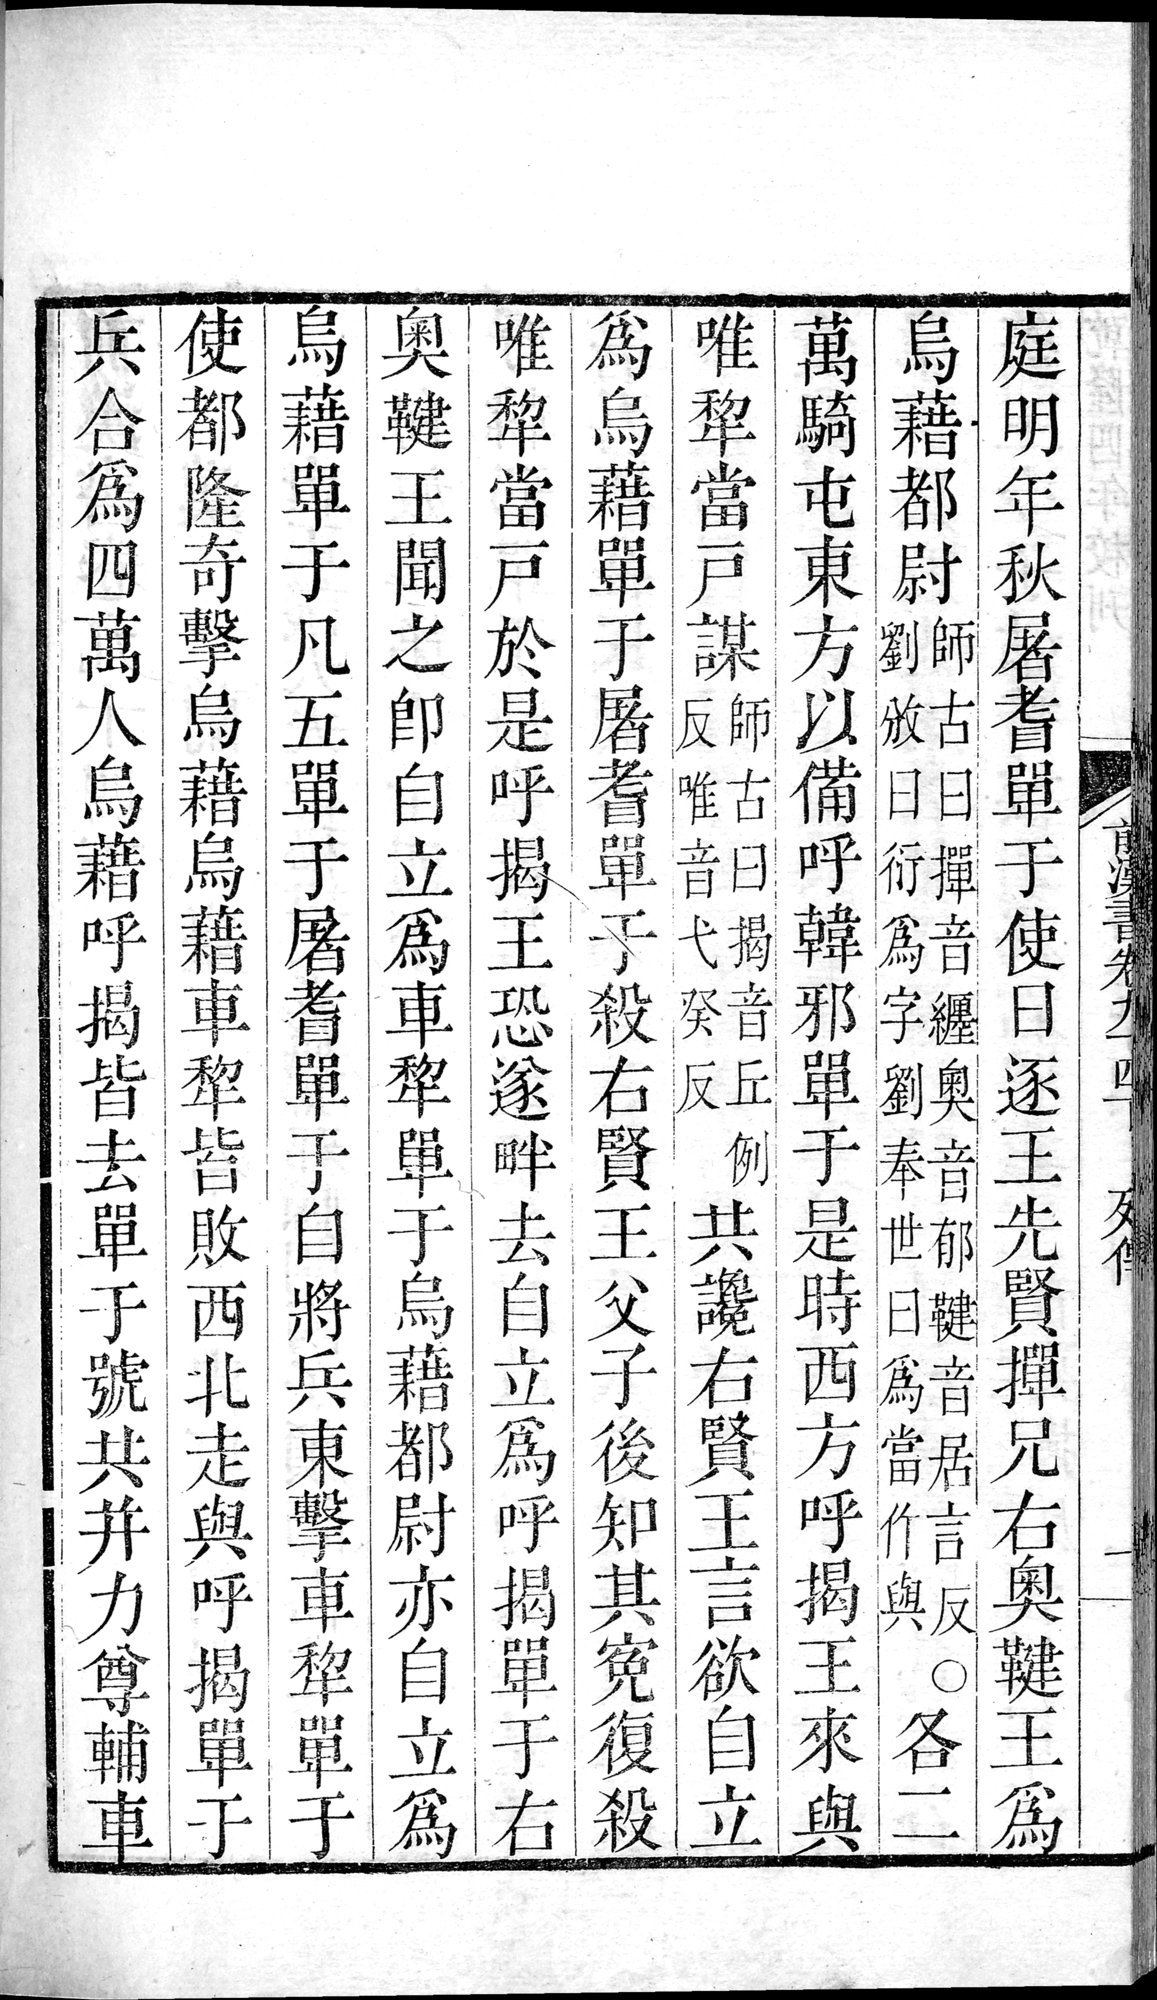 前漢書 : vol.94 bottom / Page 2 (Grayscale High Resolution Image)